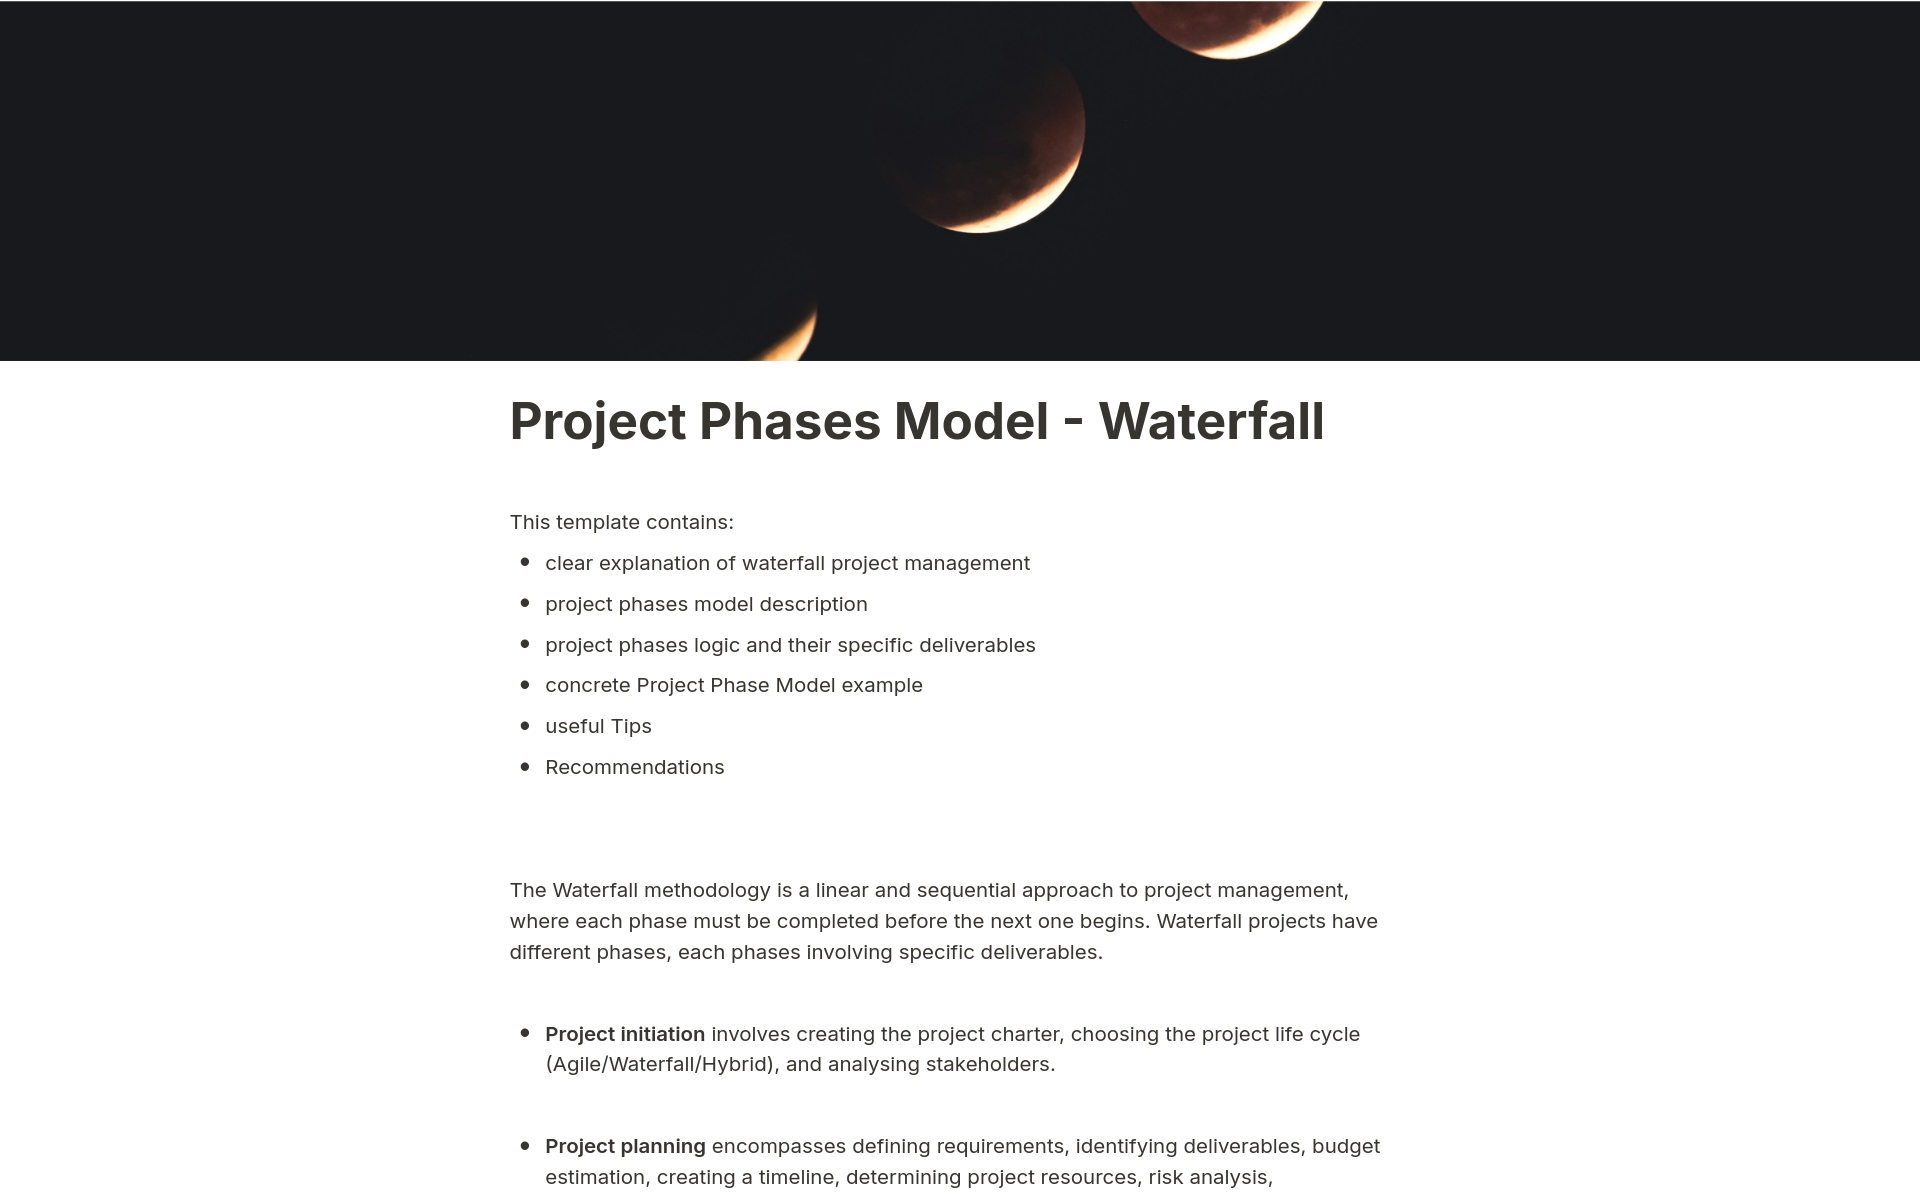 Uma prévia do modelo para Project Phases Model - Waterfall